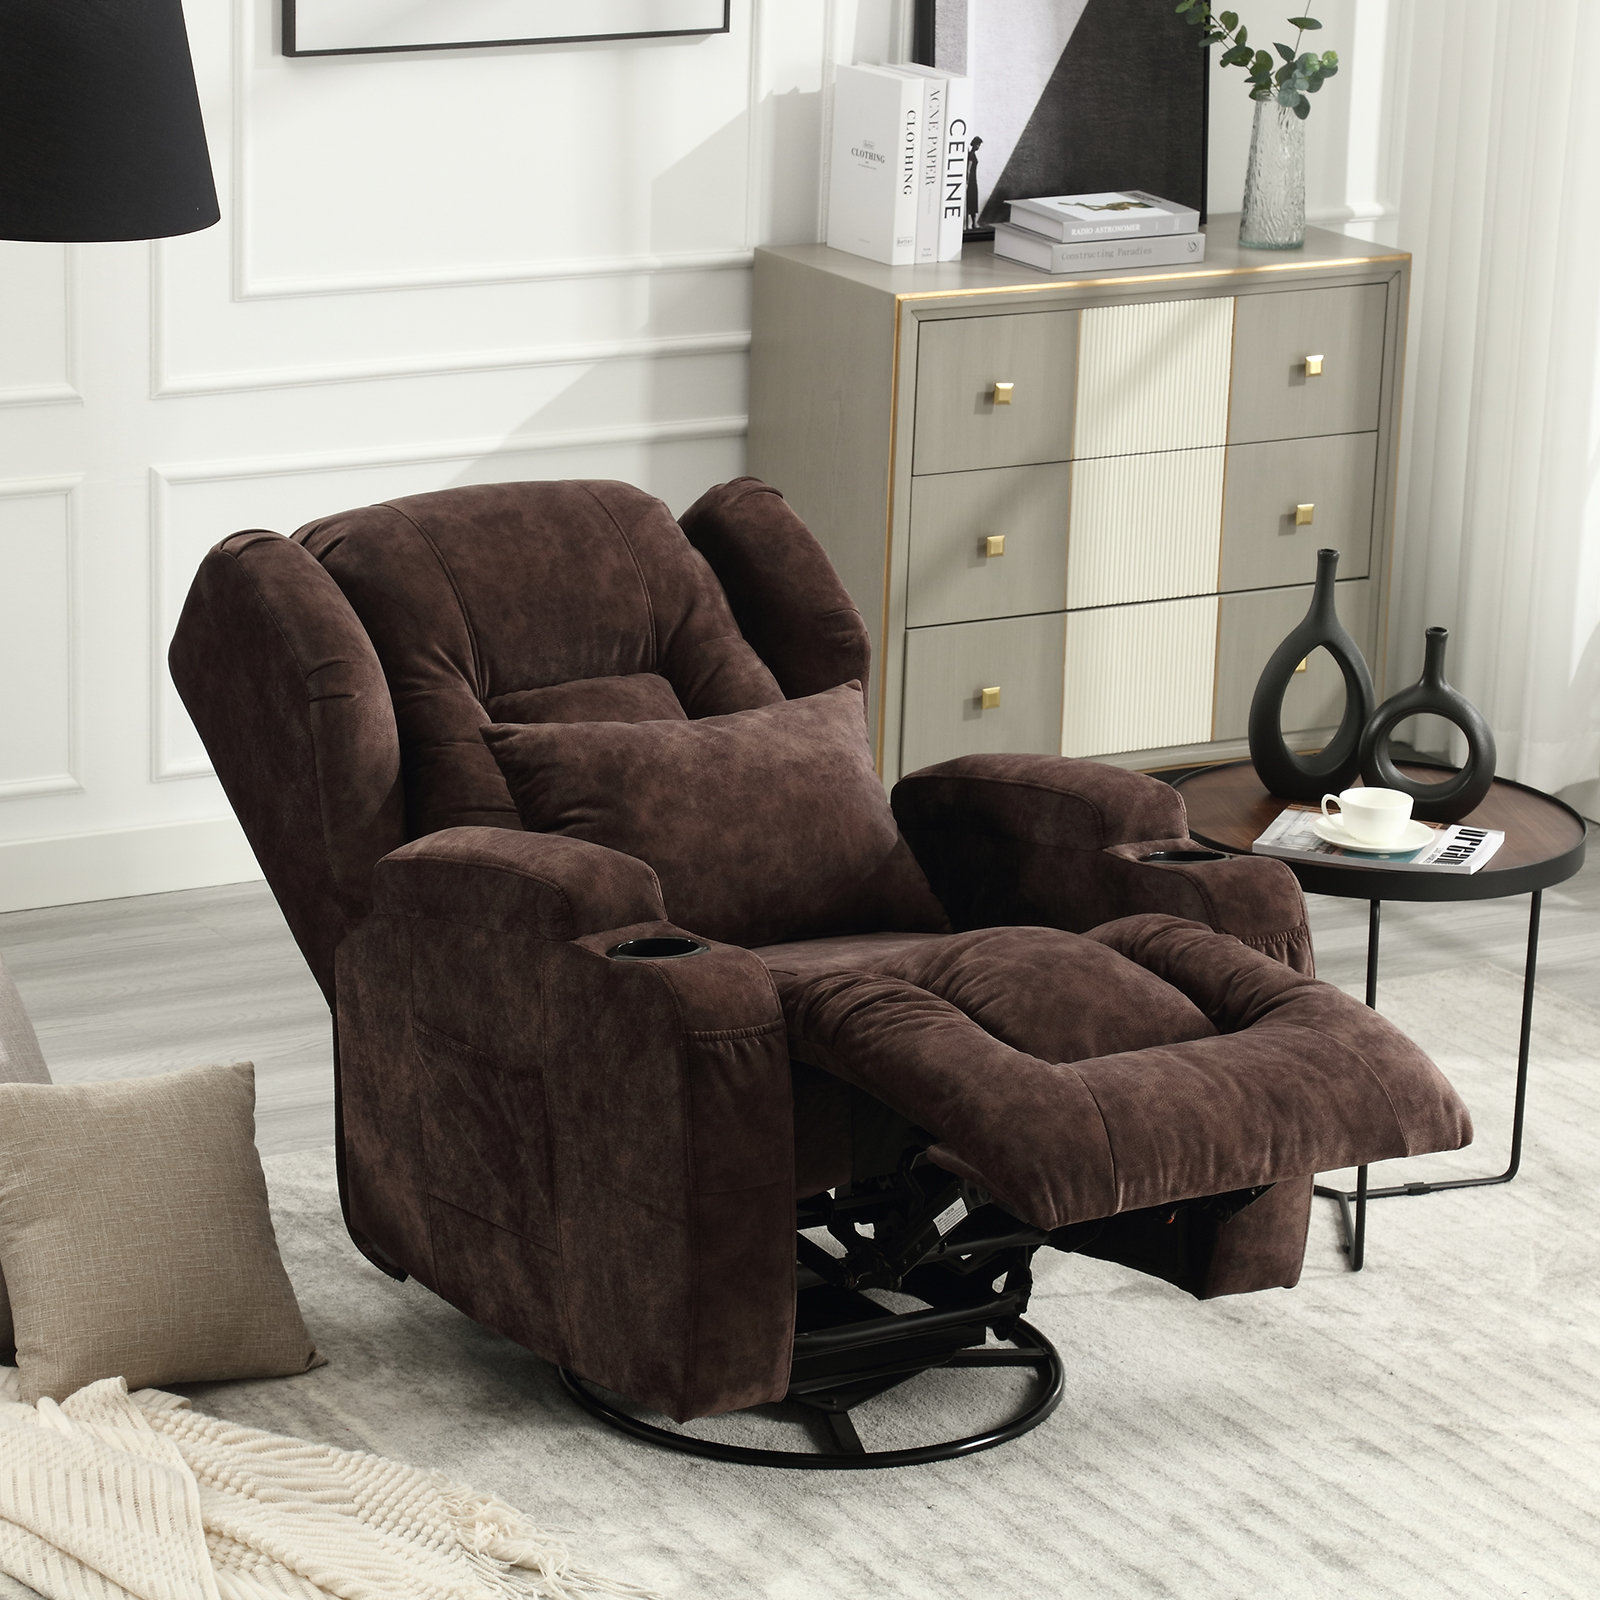 https://assets.wfcdn.com/im/20458457/compr-r85/2505/250557661/tiossem-swivel-rocking-recliner-chair-velvet-manual-glider-rocker-single-sofa-chair-for-living-room.jpg